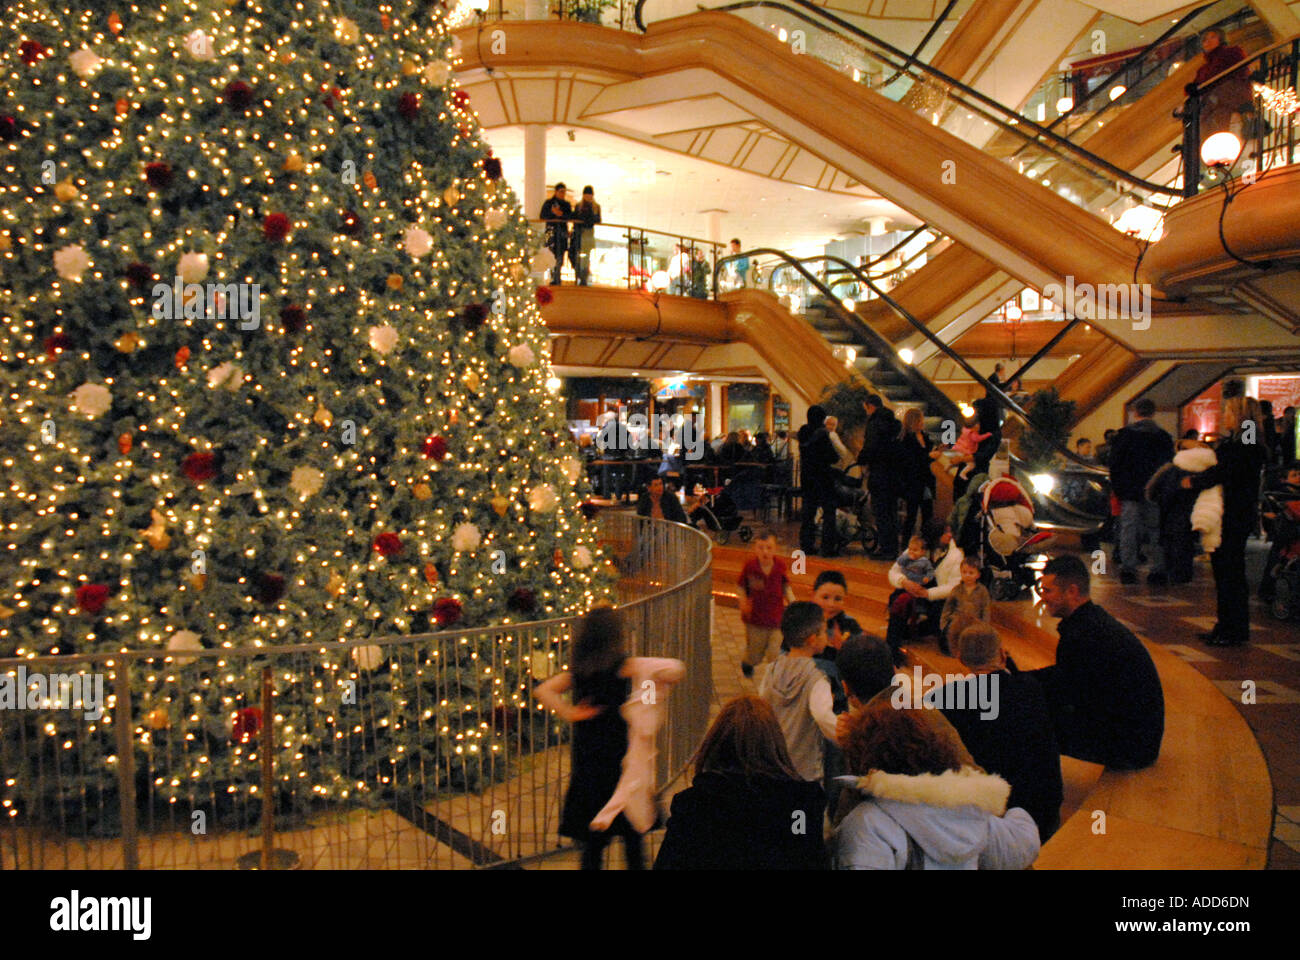 Les gens assis autour d'arbre de Noël, Princes Square Shopping Centre, Glasgow.L'Ecosse. La veille de Noël Décembre 2006 Banque D'Images